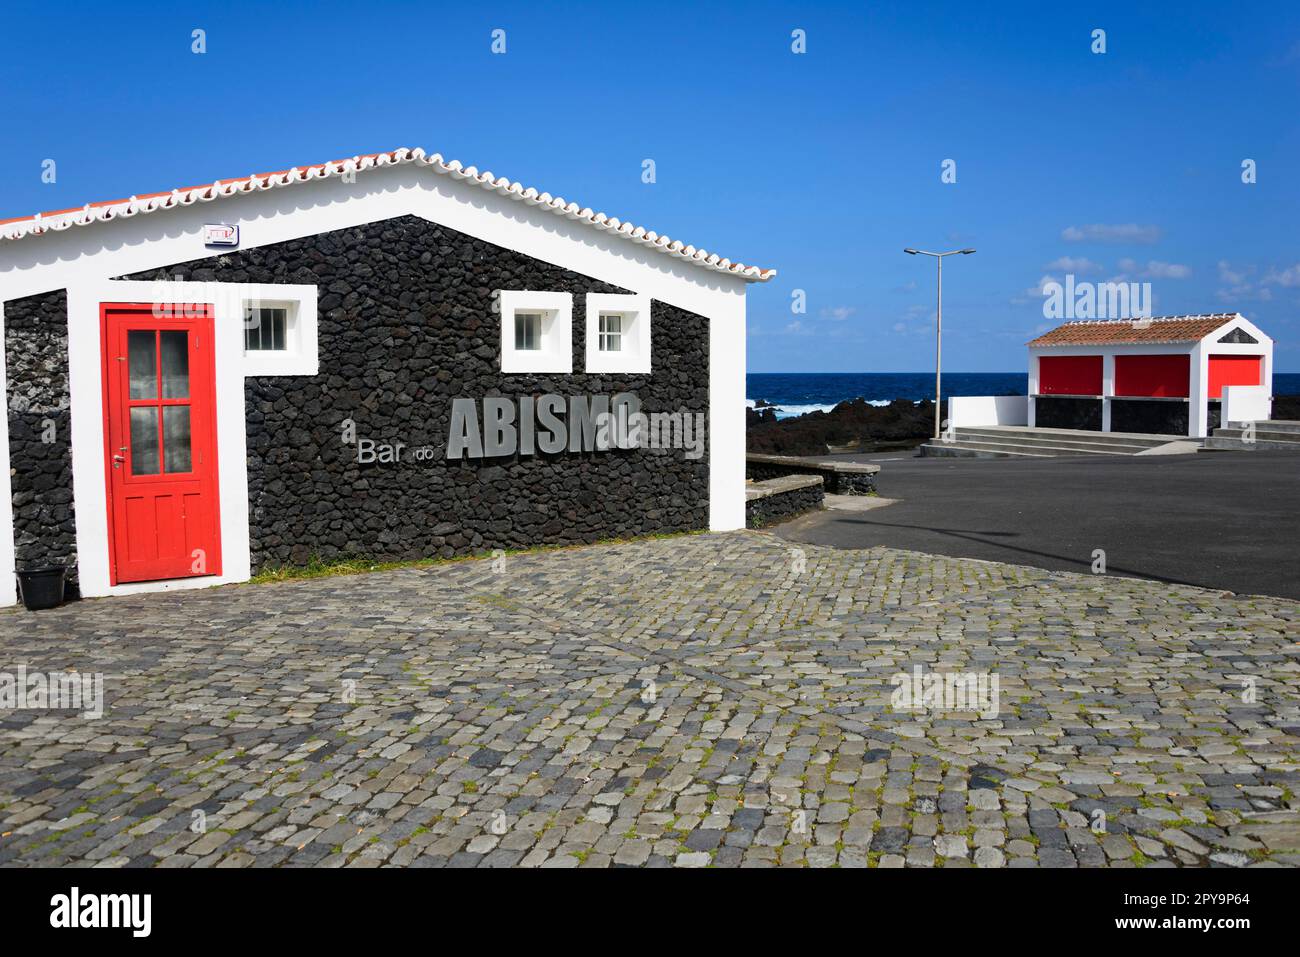 Bar do Abismo, Biscoitos, Terceira, Azores, Portugal Stock Photo